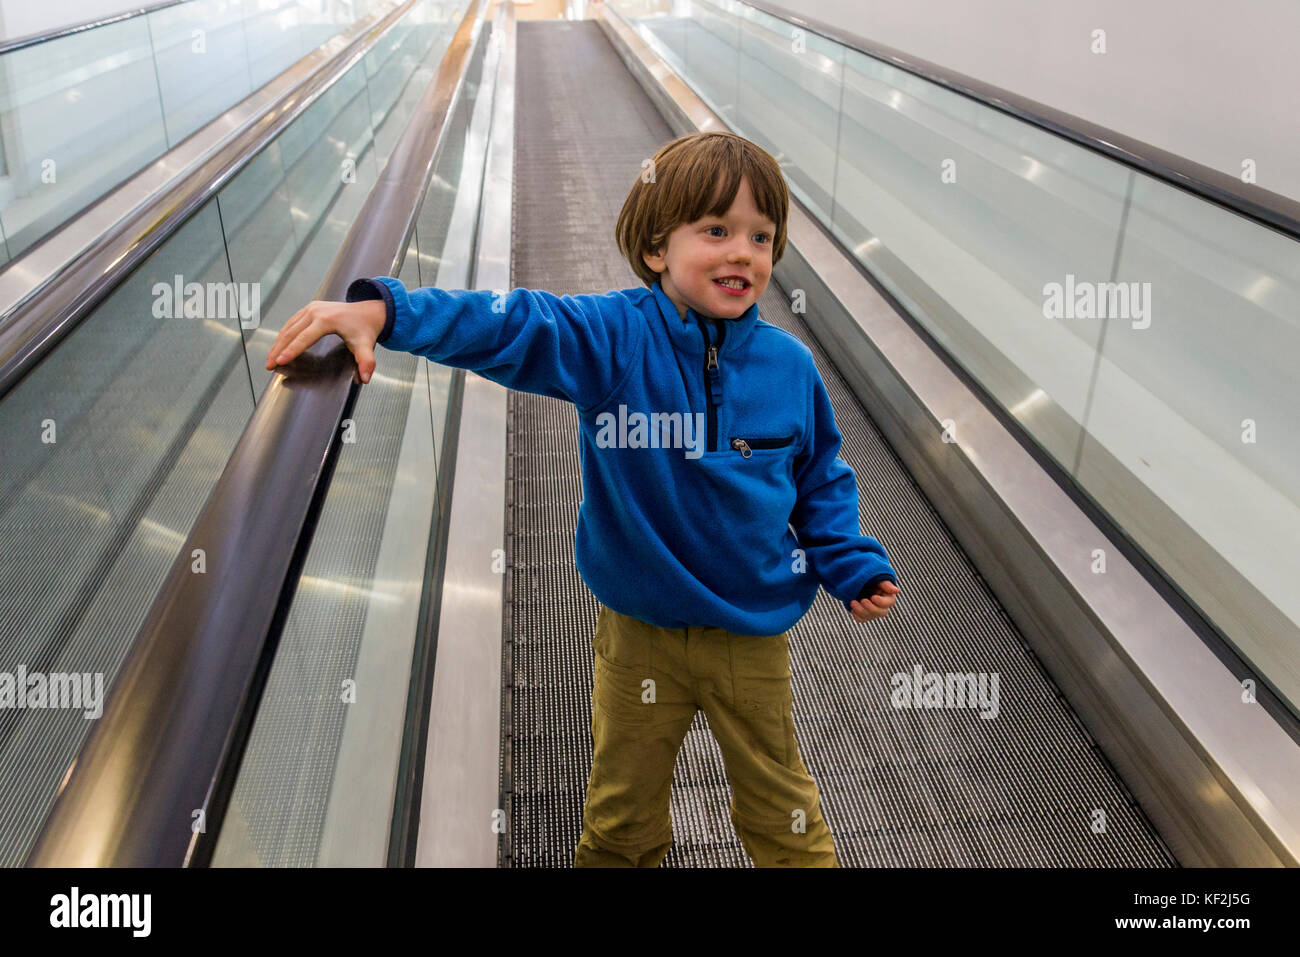 Jeune garçon sur l'escalator Banque D'Images